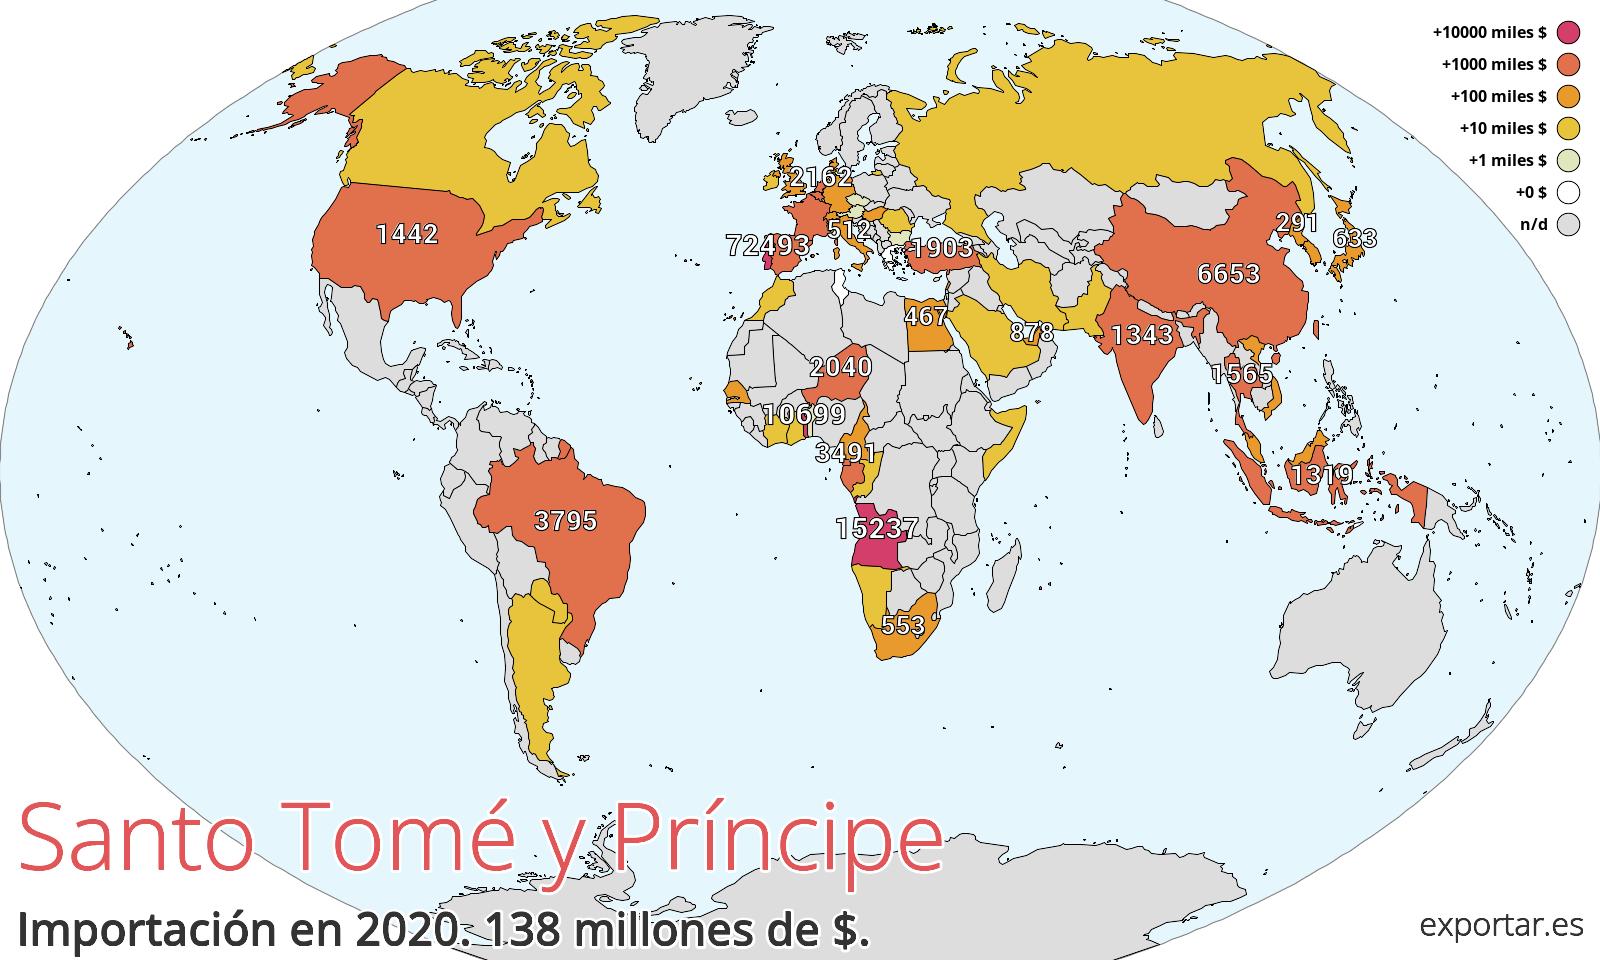 Mapa de importación de Santo Tomé y Príncipe en 2020.